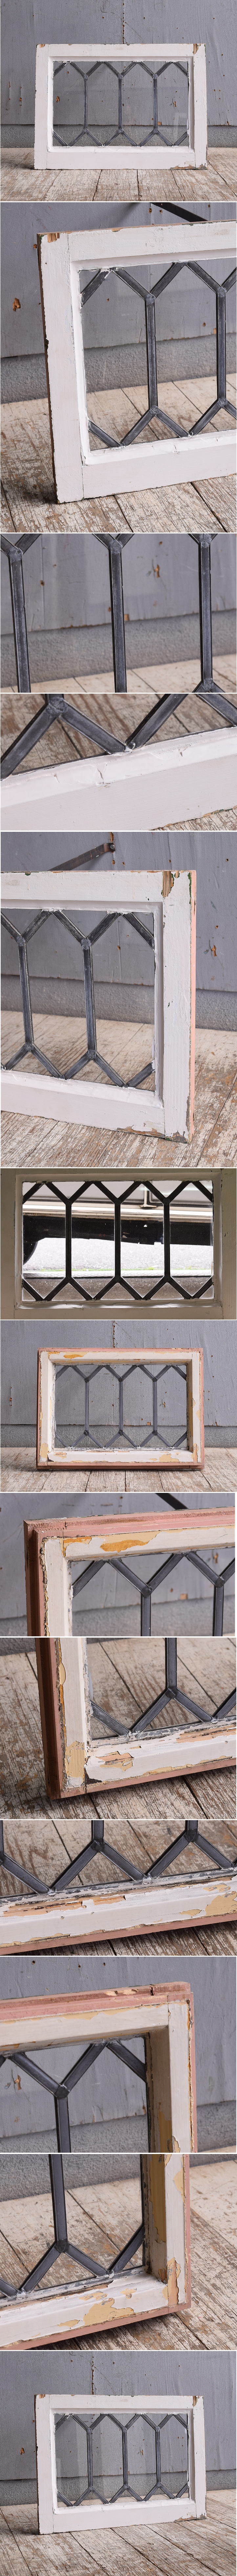 イギリス アンティーク 窓 無色透明 10879